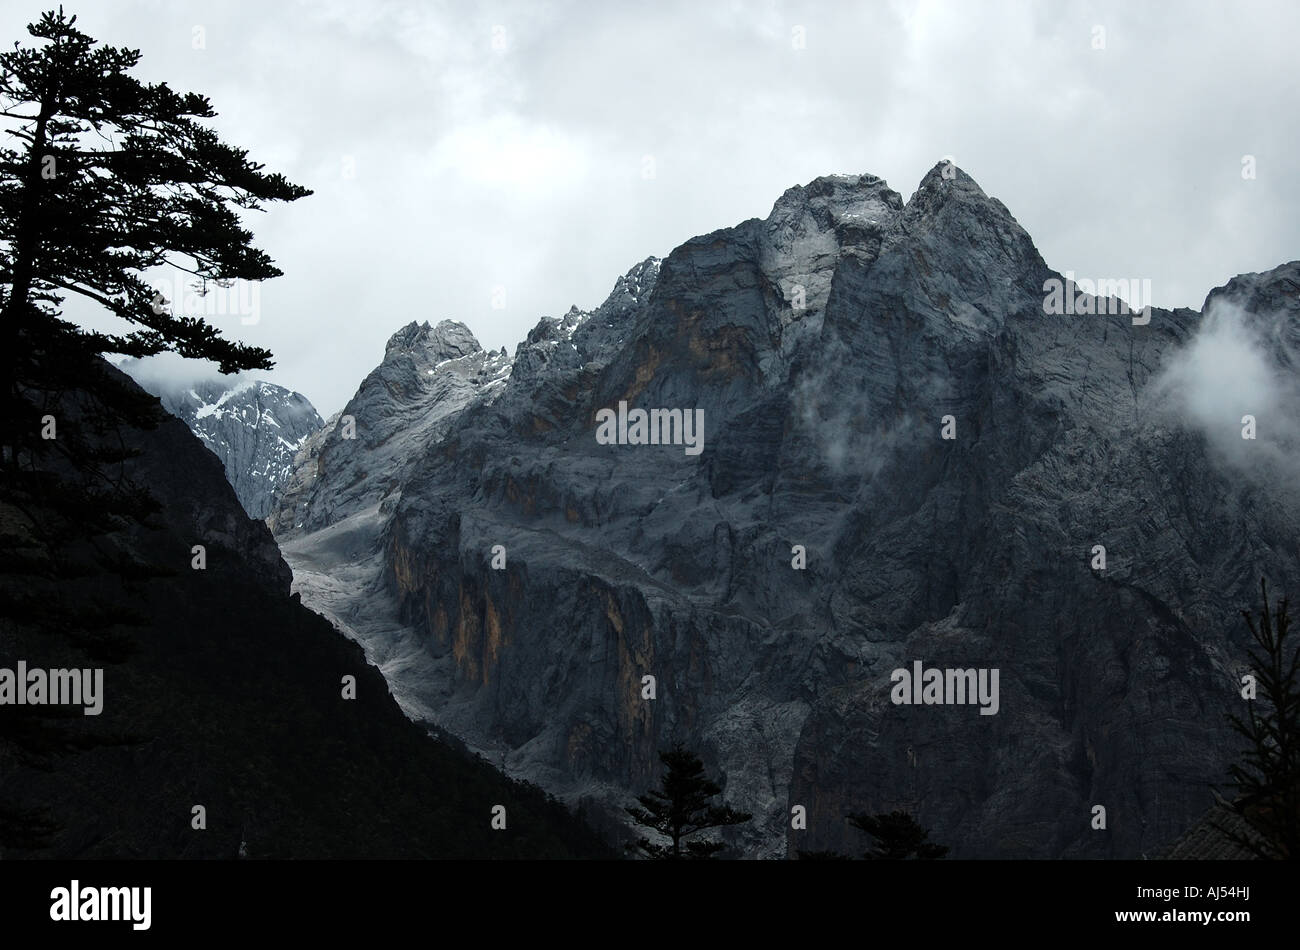 Das Majestic Yulong (Jade-Drachen) Mountain steht mehr als 18.000' (5600 m) im westlichen Yunnan, China. Stockfoto